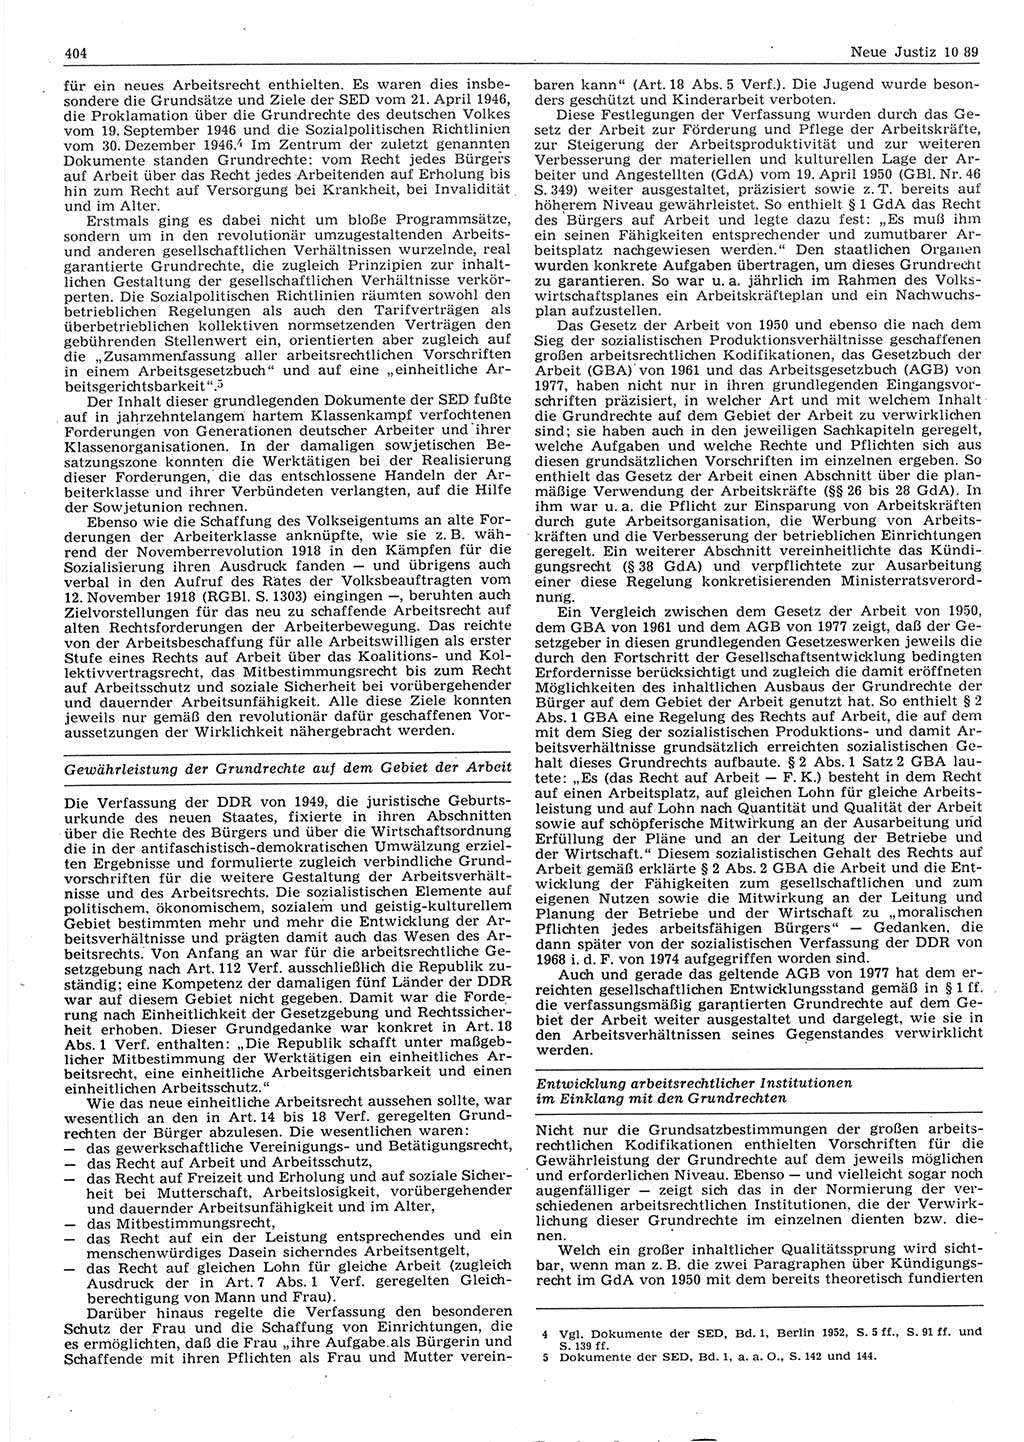 Neue Justiz (NJ), Zeitschrift für sozialistisches Recht und Gesetzlichkeit [Deutsche Demokratische Republik (DDR)], 43. Jahrgang 1989, Seite 404 (NJ DDR 1989, S. 404)